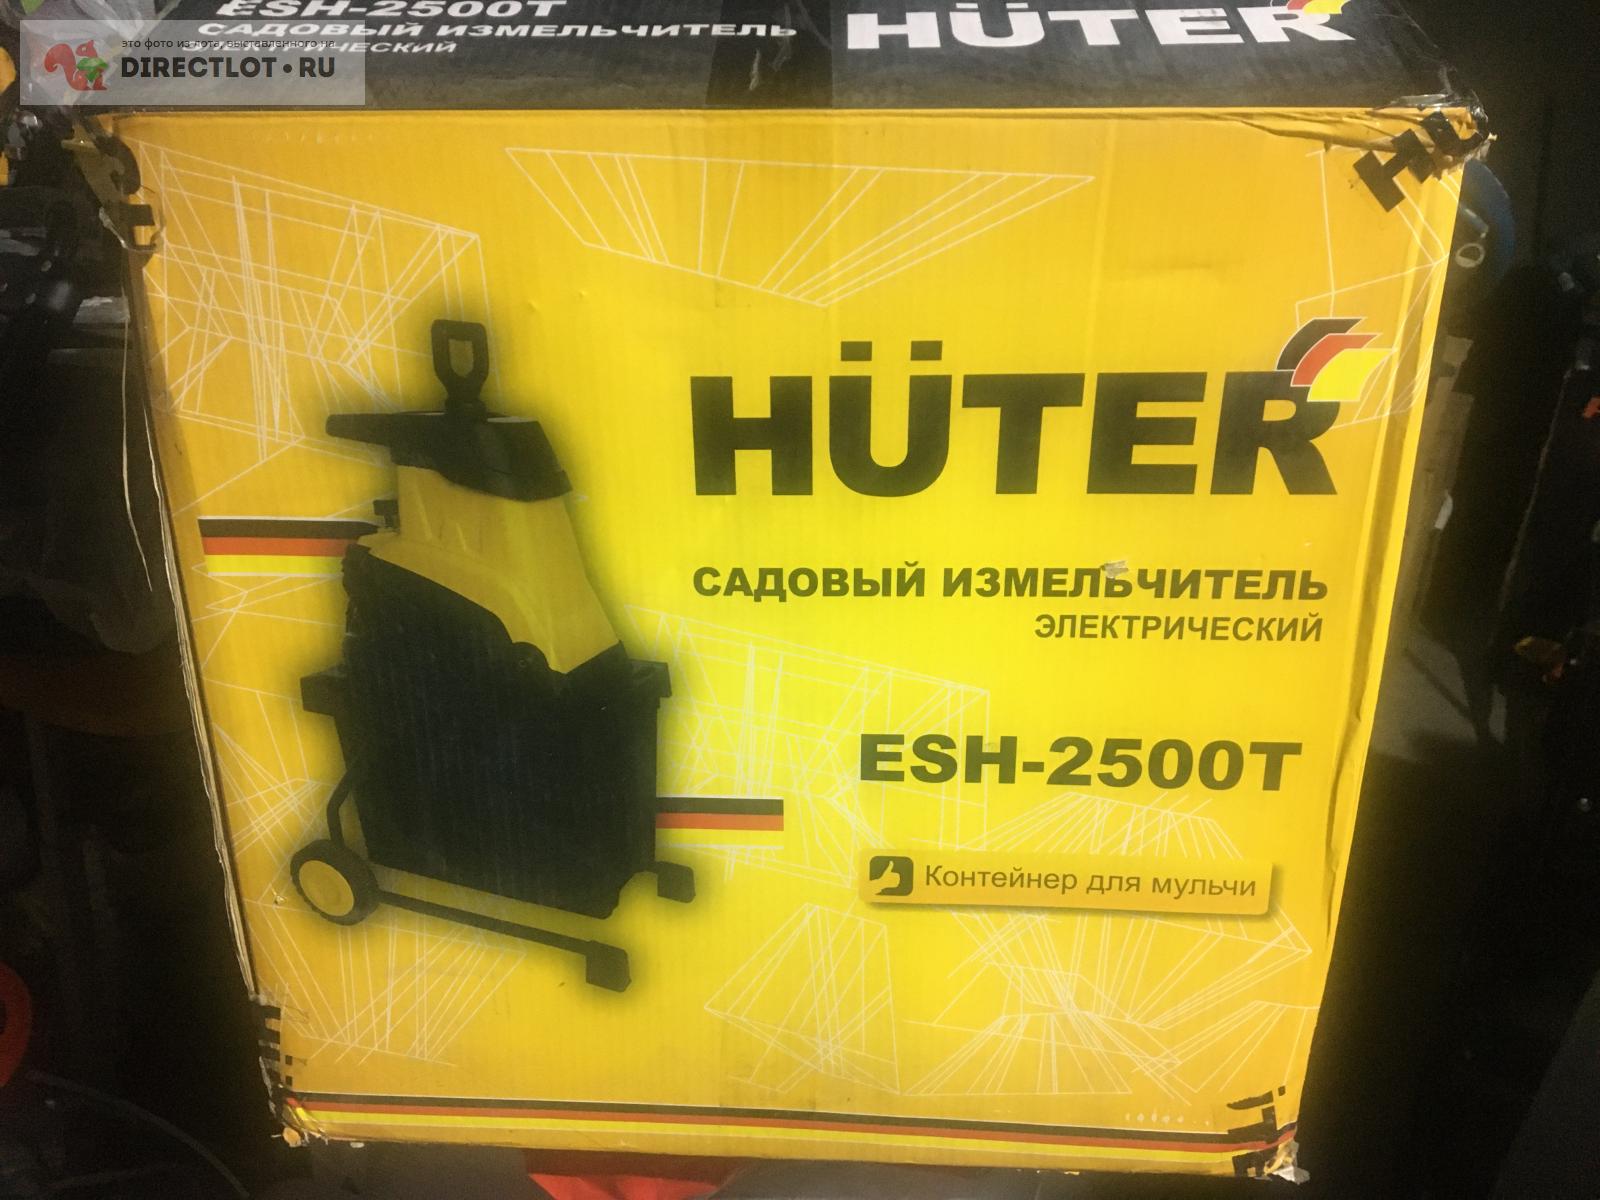  измельчитель Huter ESH-2500T  в Пензе цена 5000 Р на .